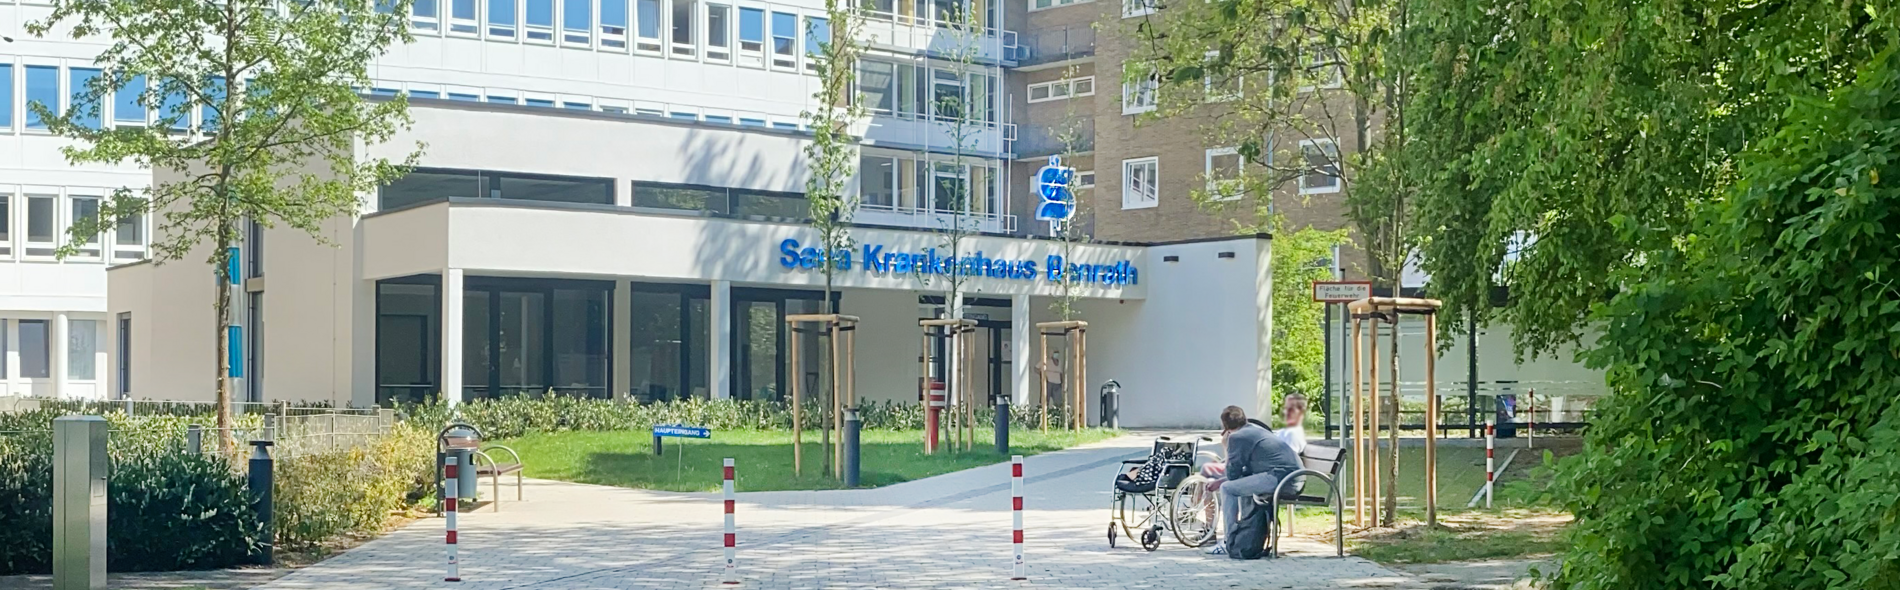 Foto des Eingang zum Sana Klinikum in Düsseldorf-Benrath